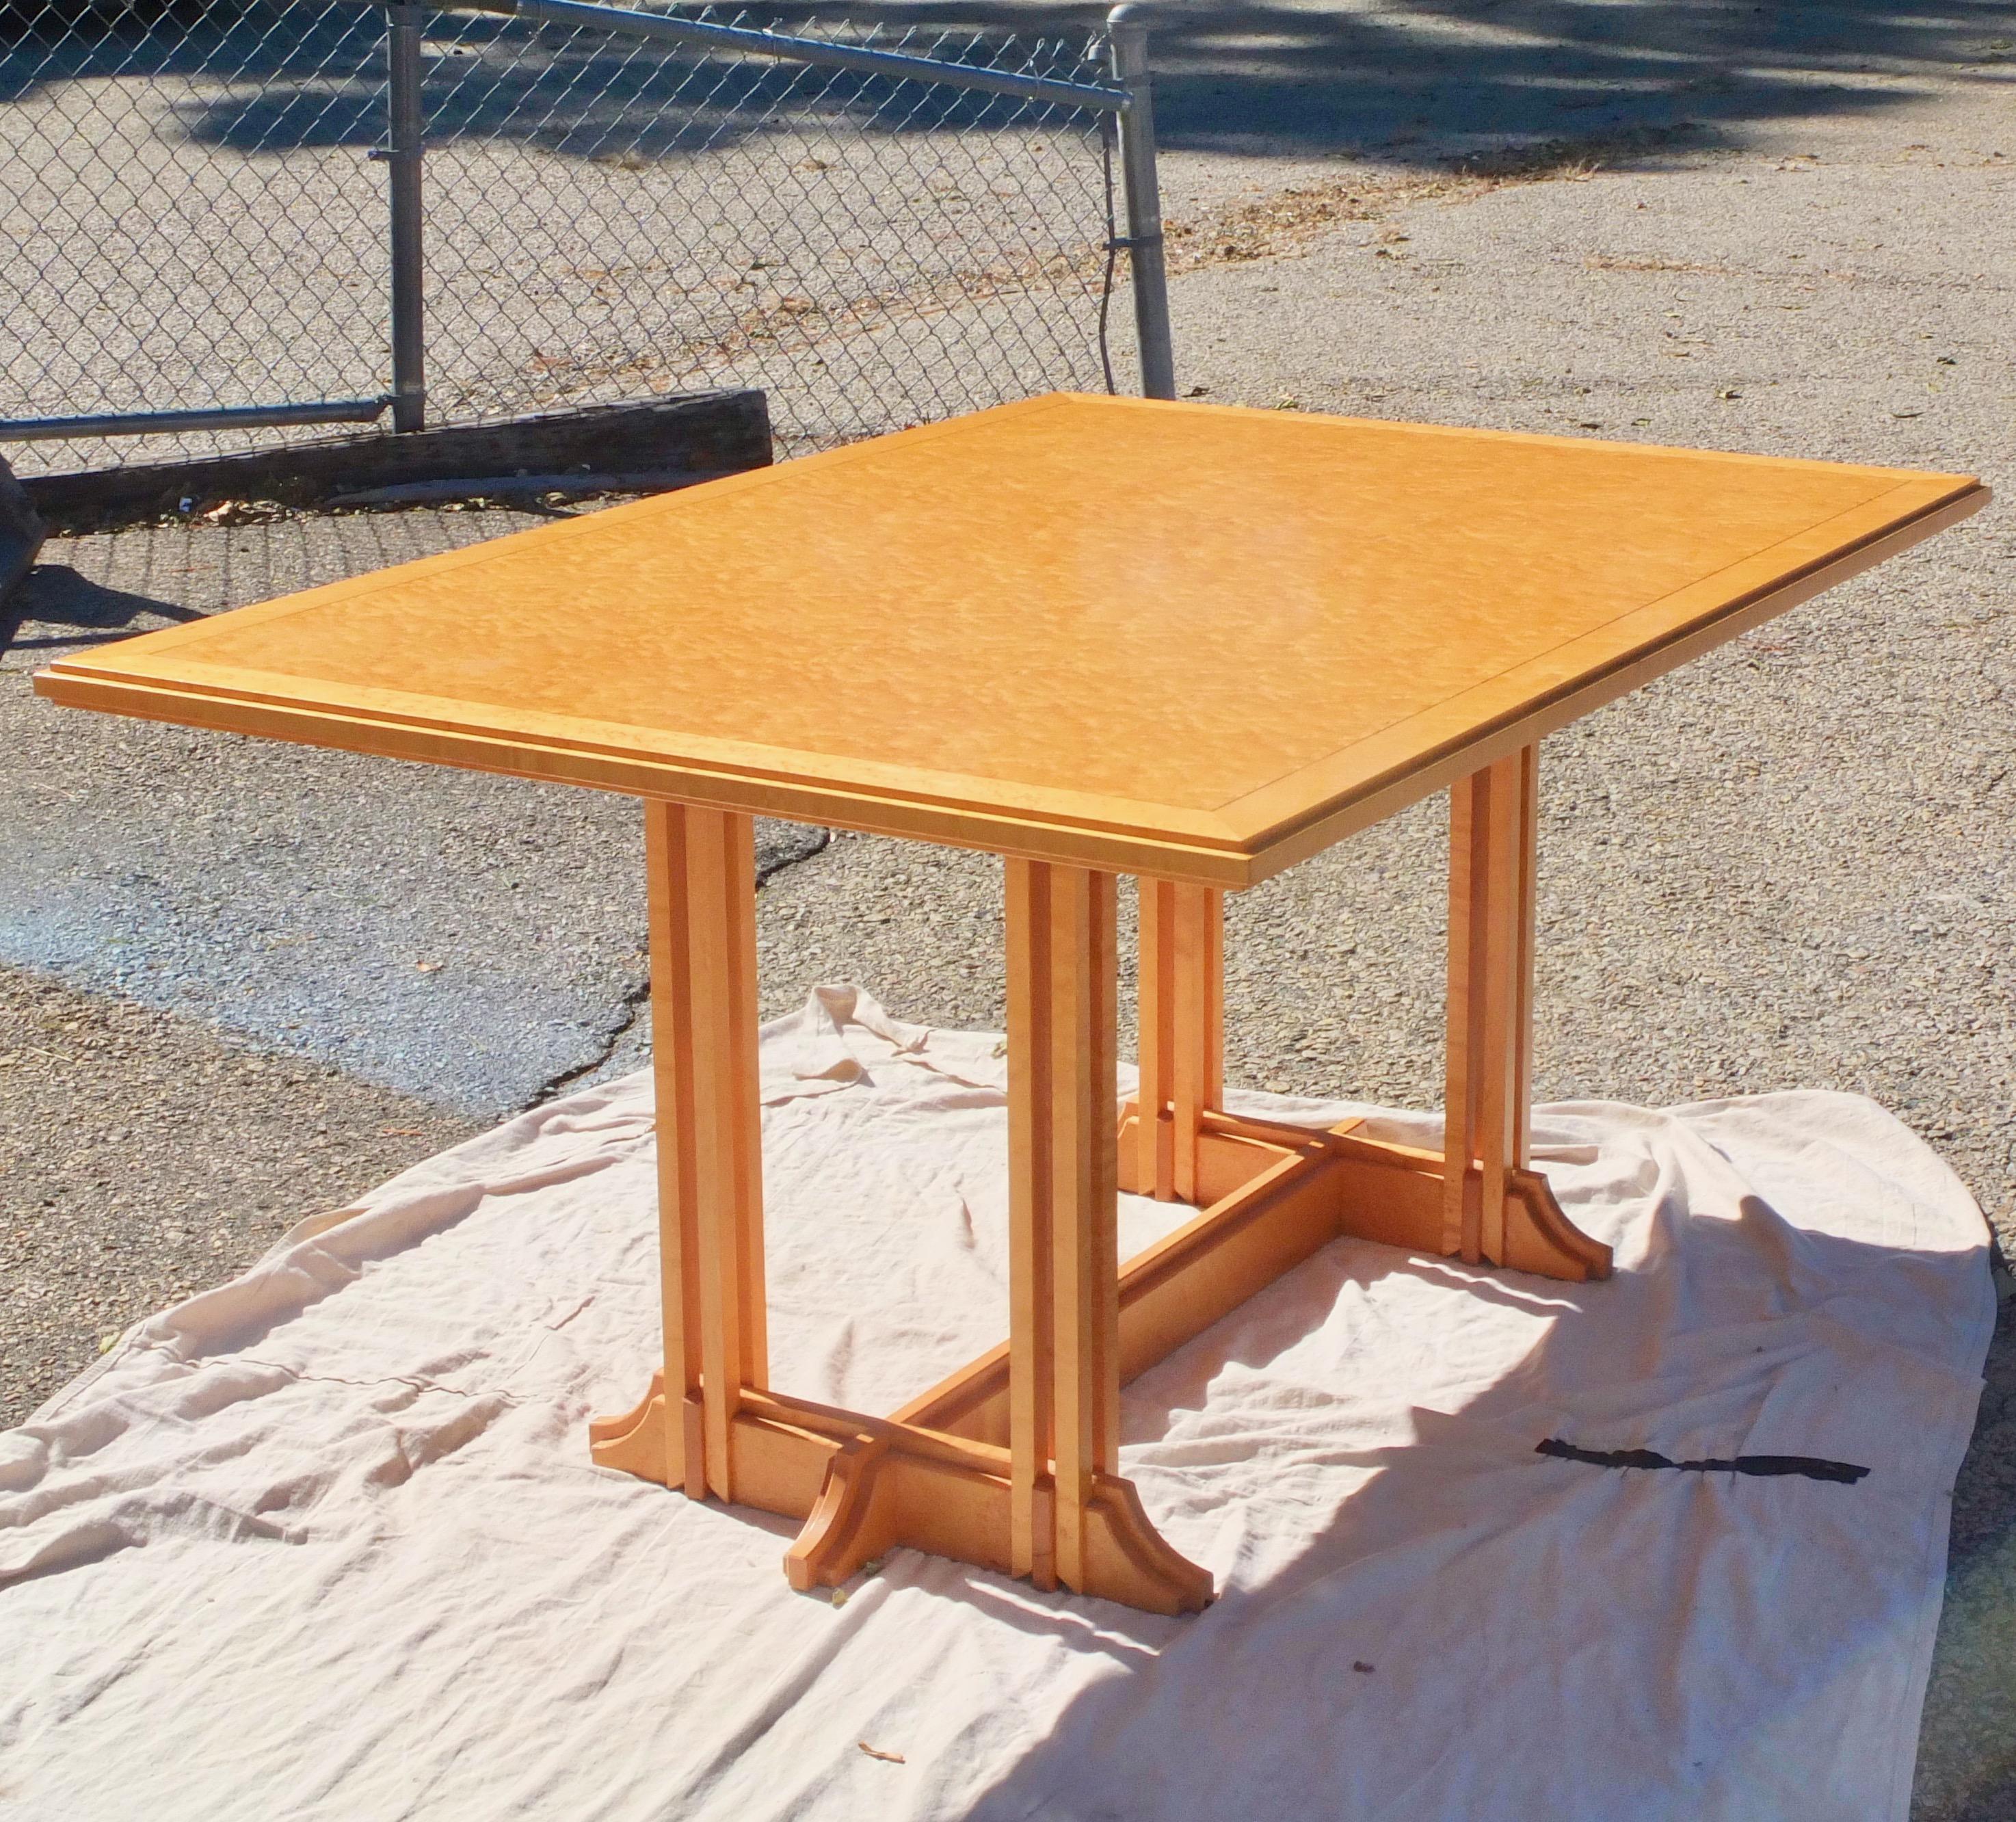 Der Esstisch aus gestepptem Ahornholz wurde 1987 vom Studio-Möbelbauer Gregg Lipton für seine Eltern entworfen. In diesem Tisch steckt also ganz besonders viel Liebe! 